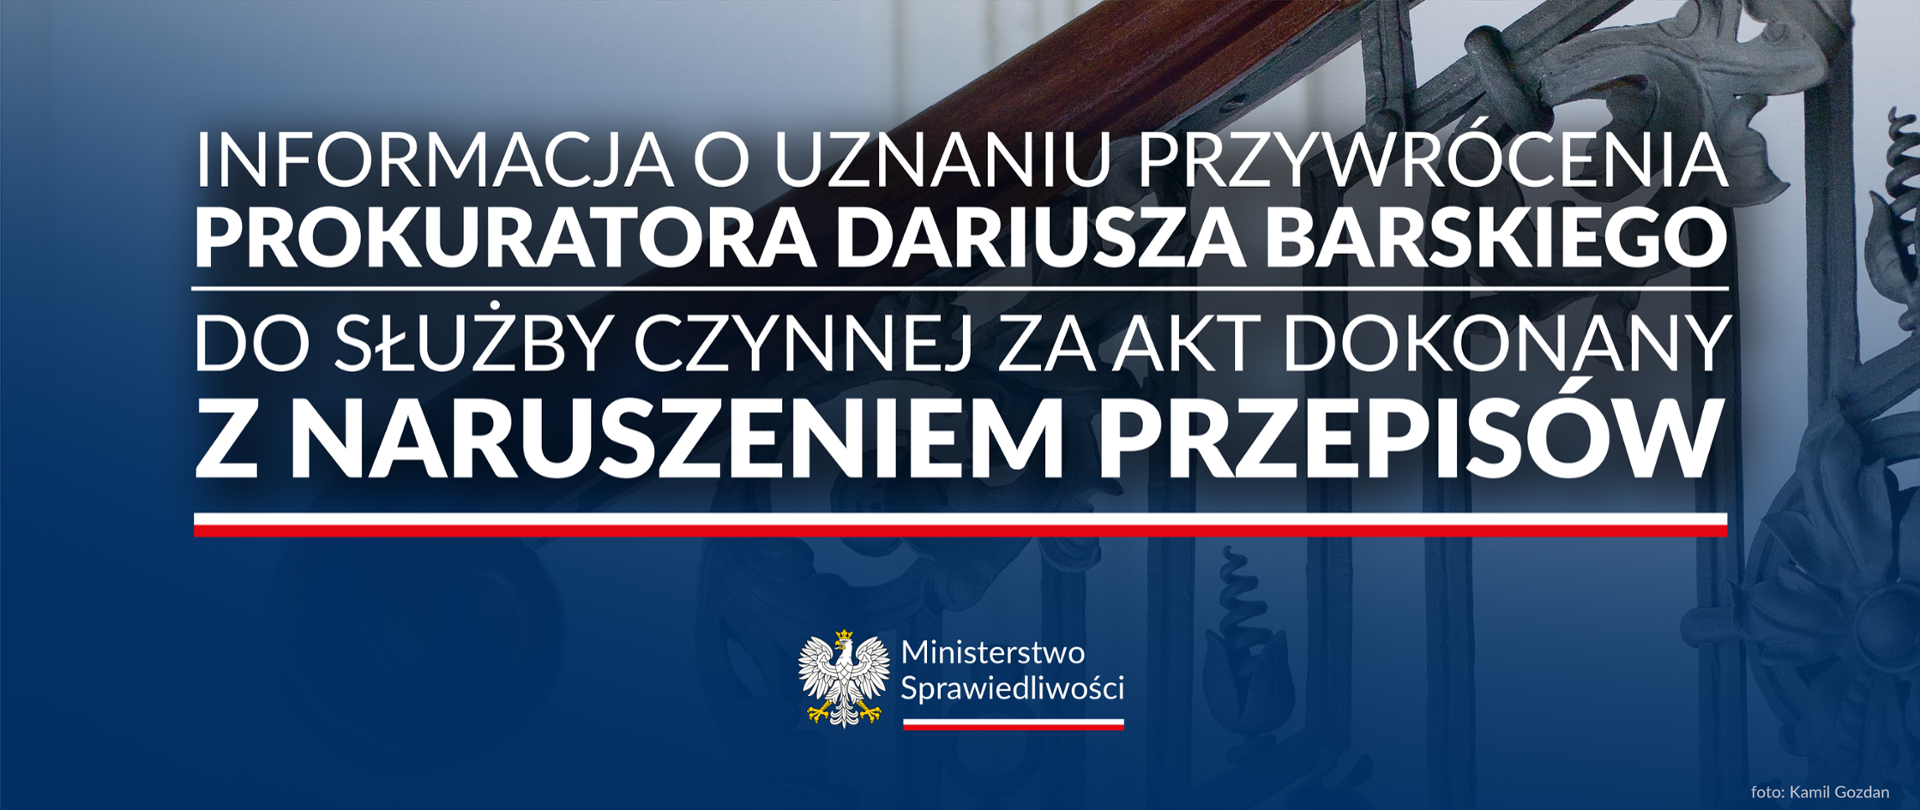 Informacja o uznaniu przywrócenia prokuratora Dariusza Barskiego do służby czynnej za akt dokonany z naruszeniem przepisów